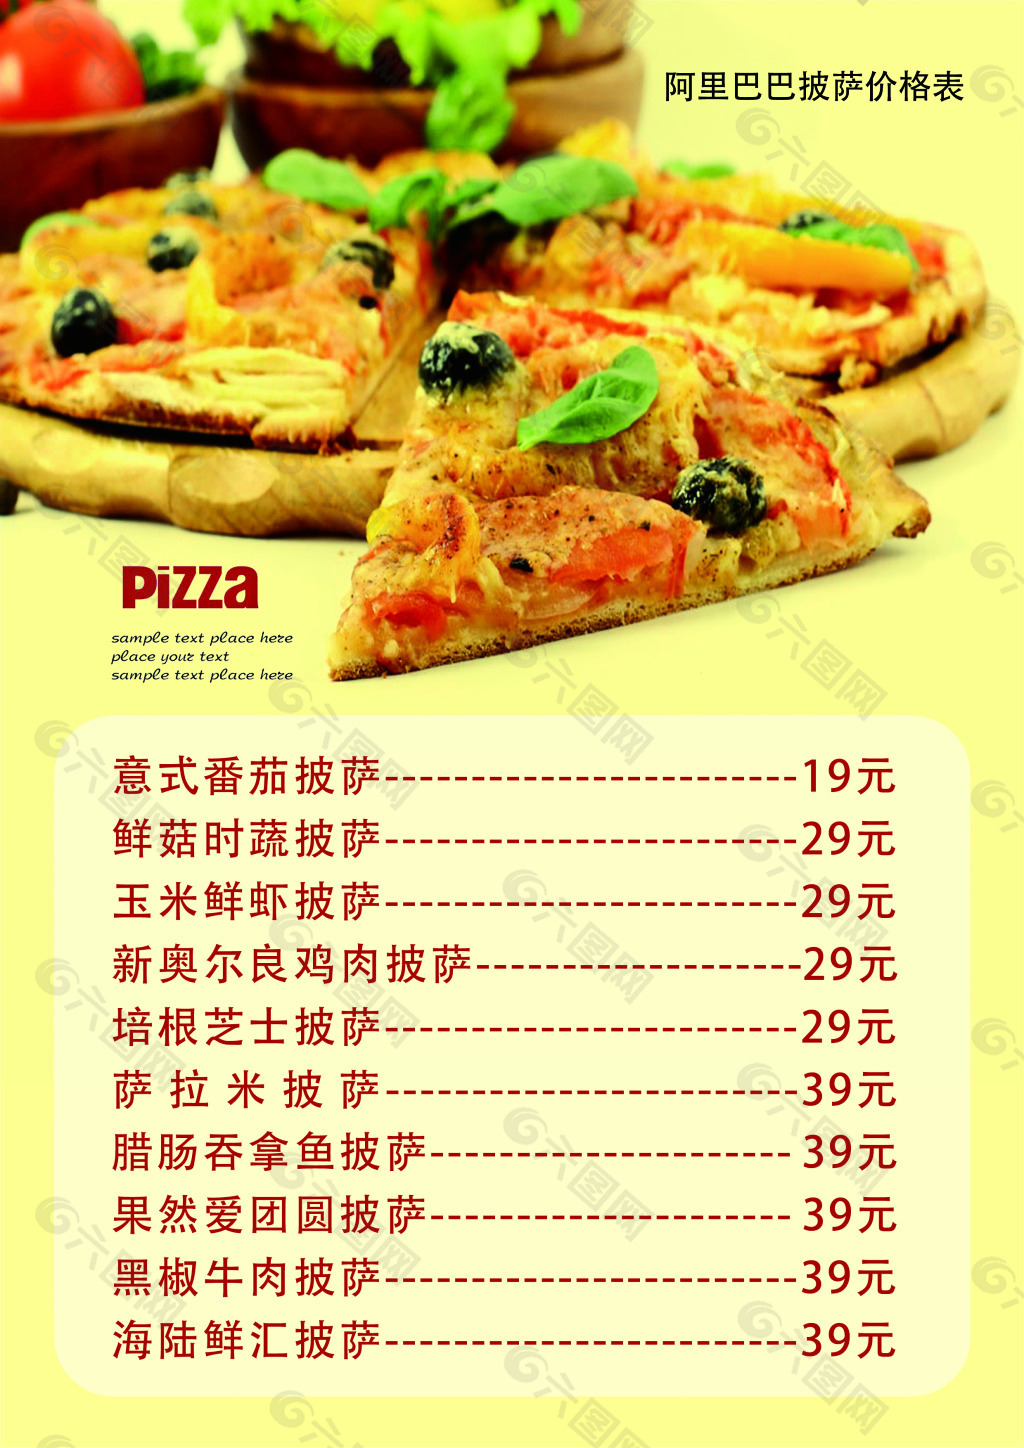 101披萨菜单图片及价格图片